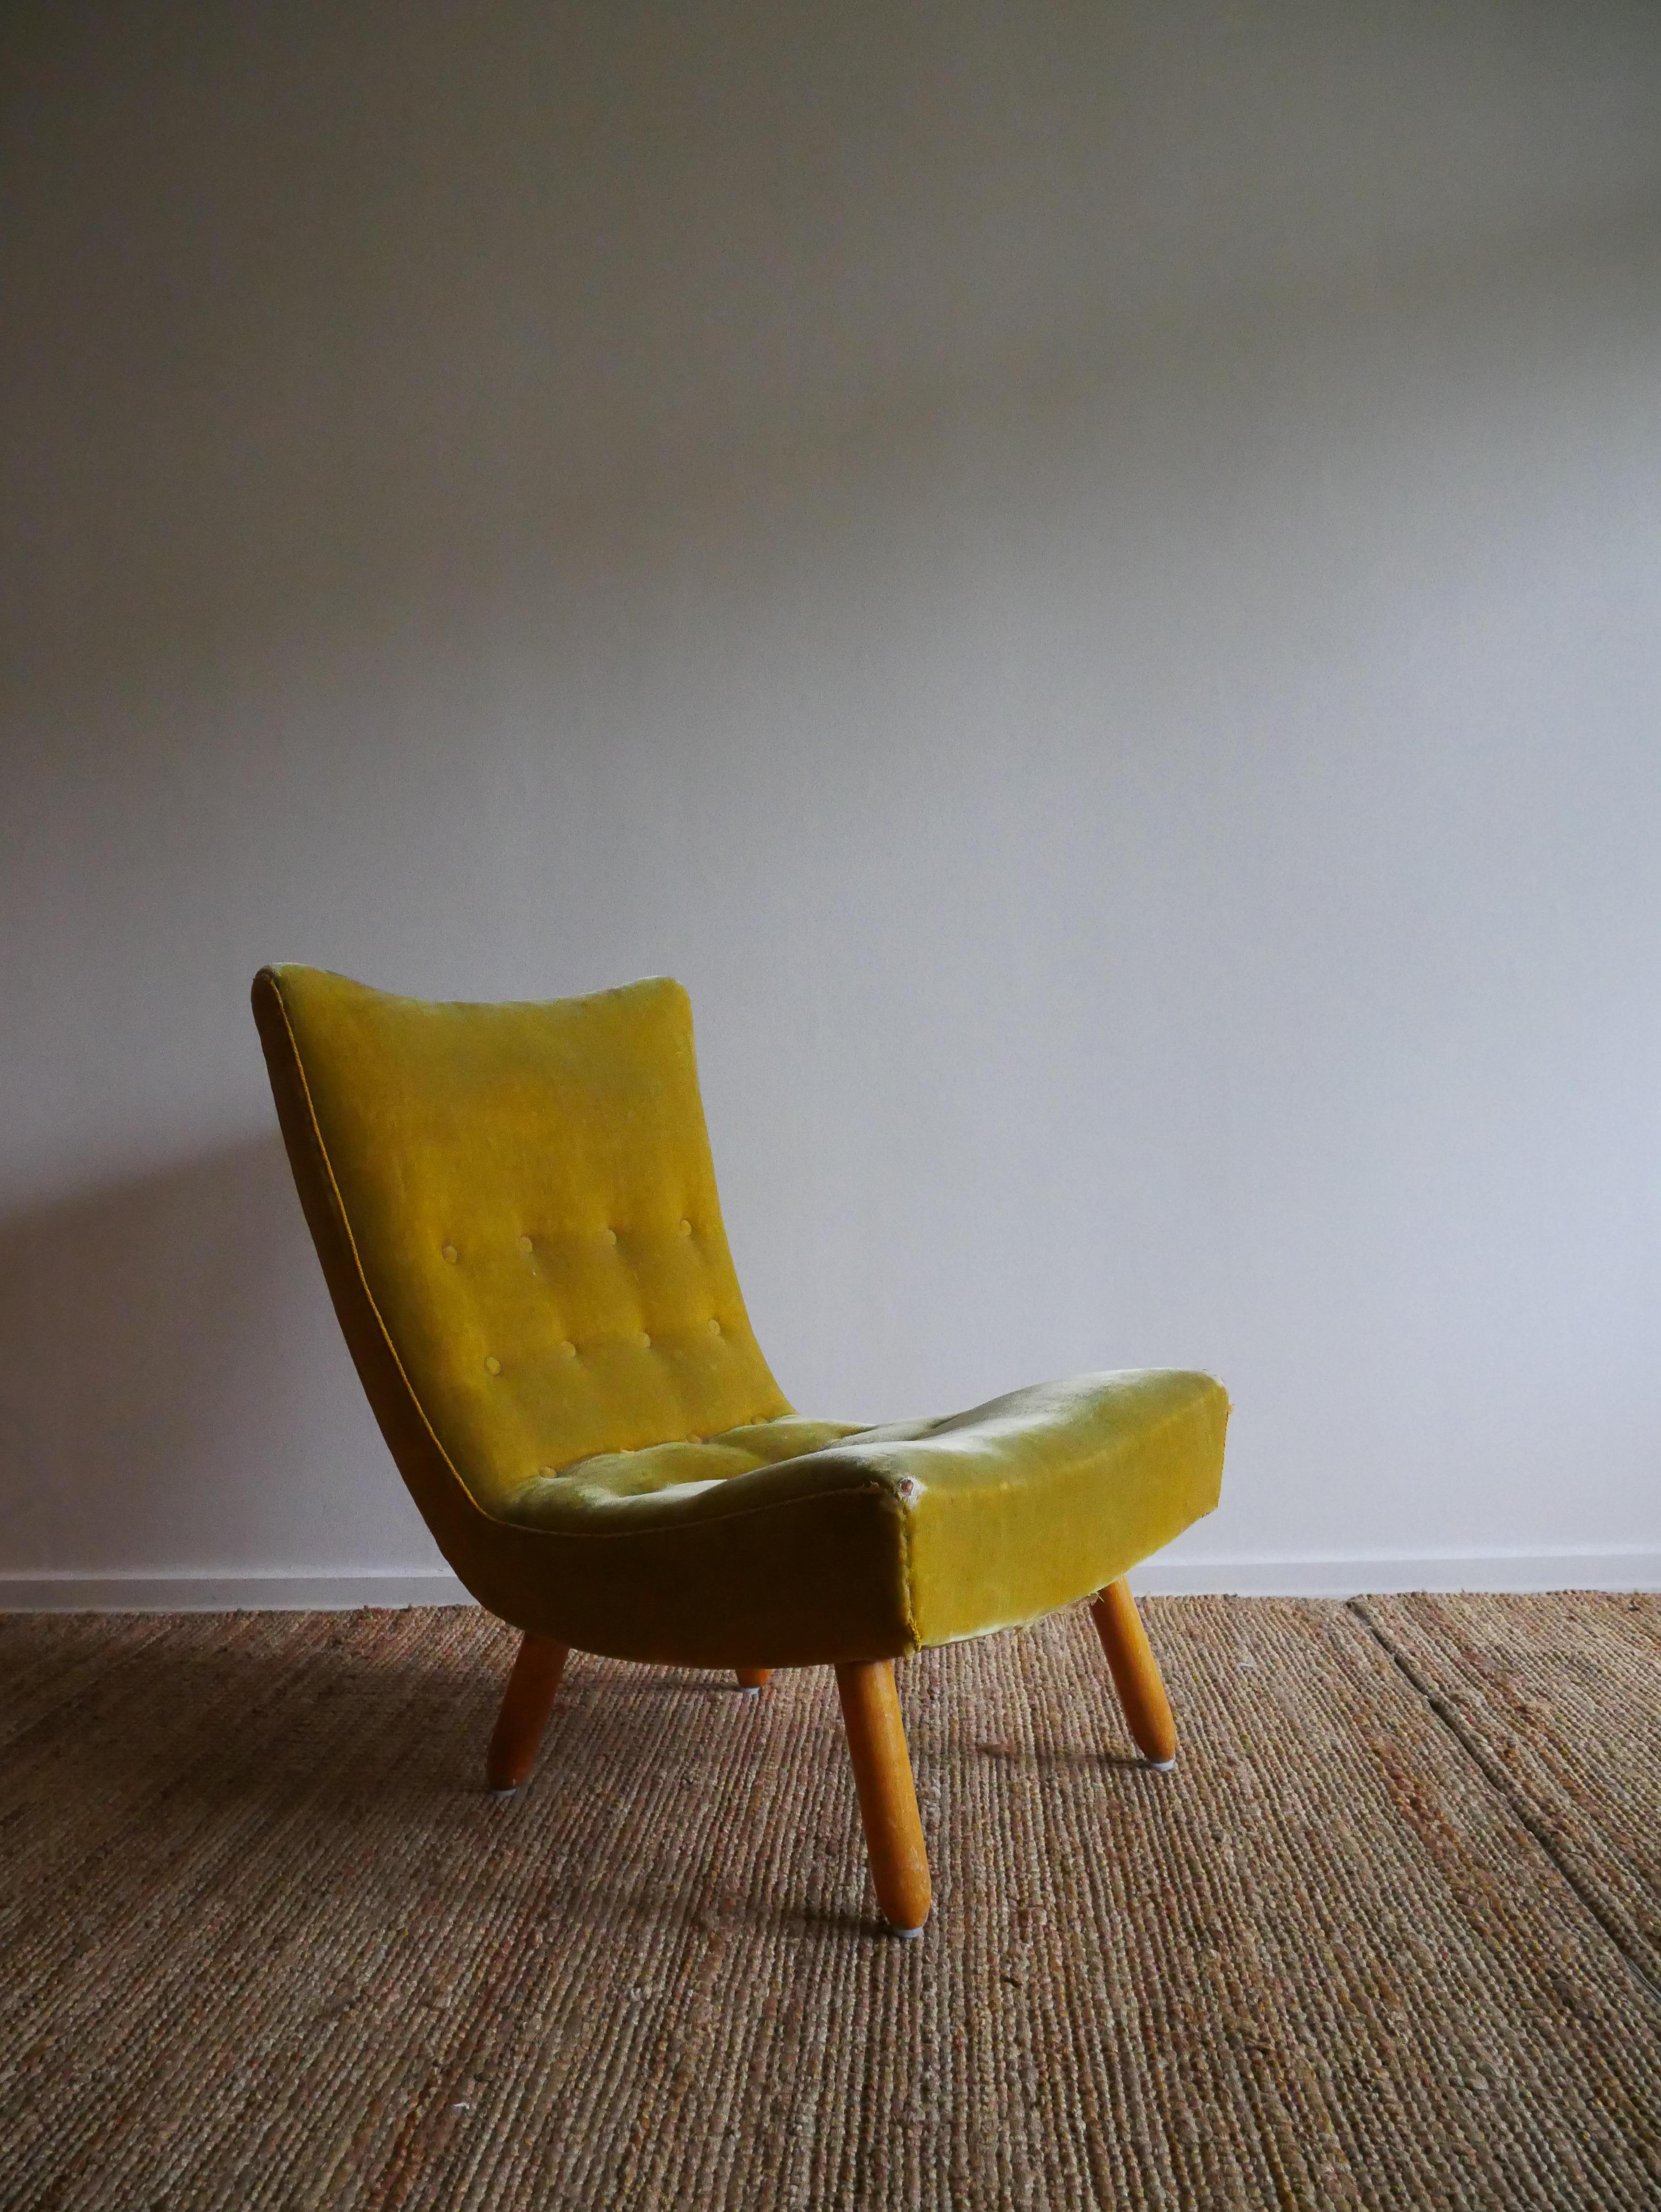 Chaise longue suédoise
Fabriqué dans les années 1940-50

Belle forme et caractère,
semblable à la chaise en forme de palourde fabriquée par Arnold Madsen

Hauteur : 82 cm
Largeur : 57 cm
Profondeur : 50 cm
Hauteur du siège : 39 cm